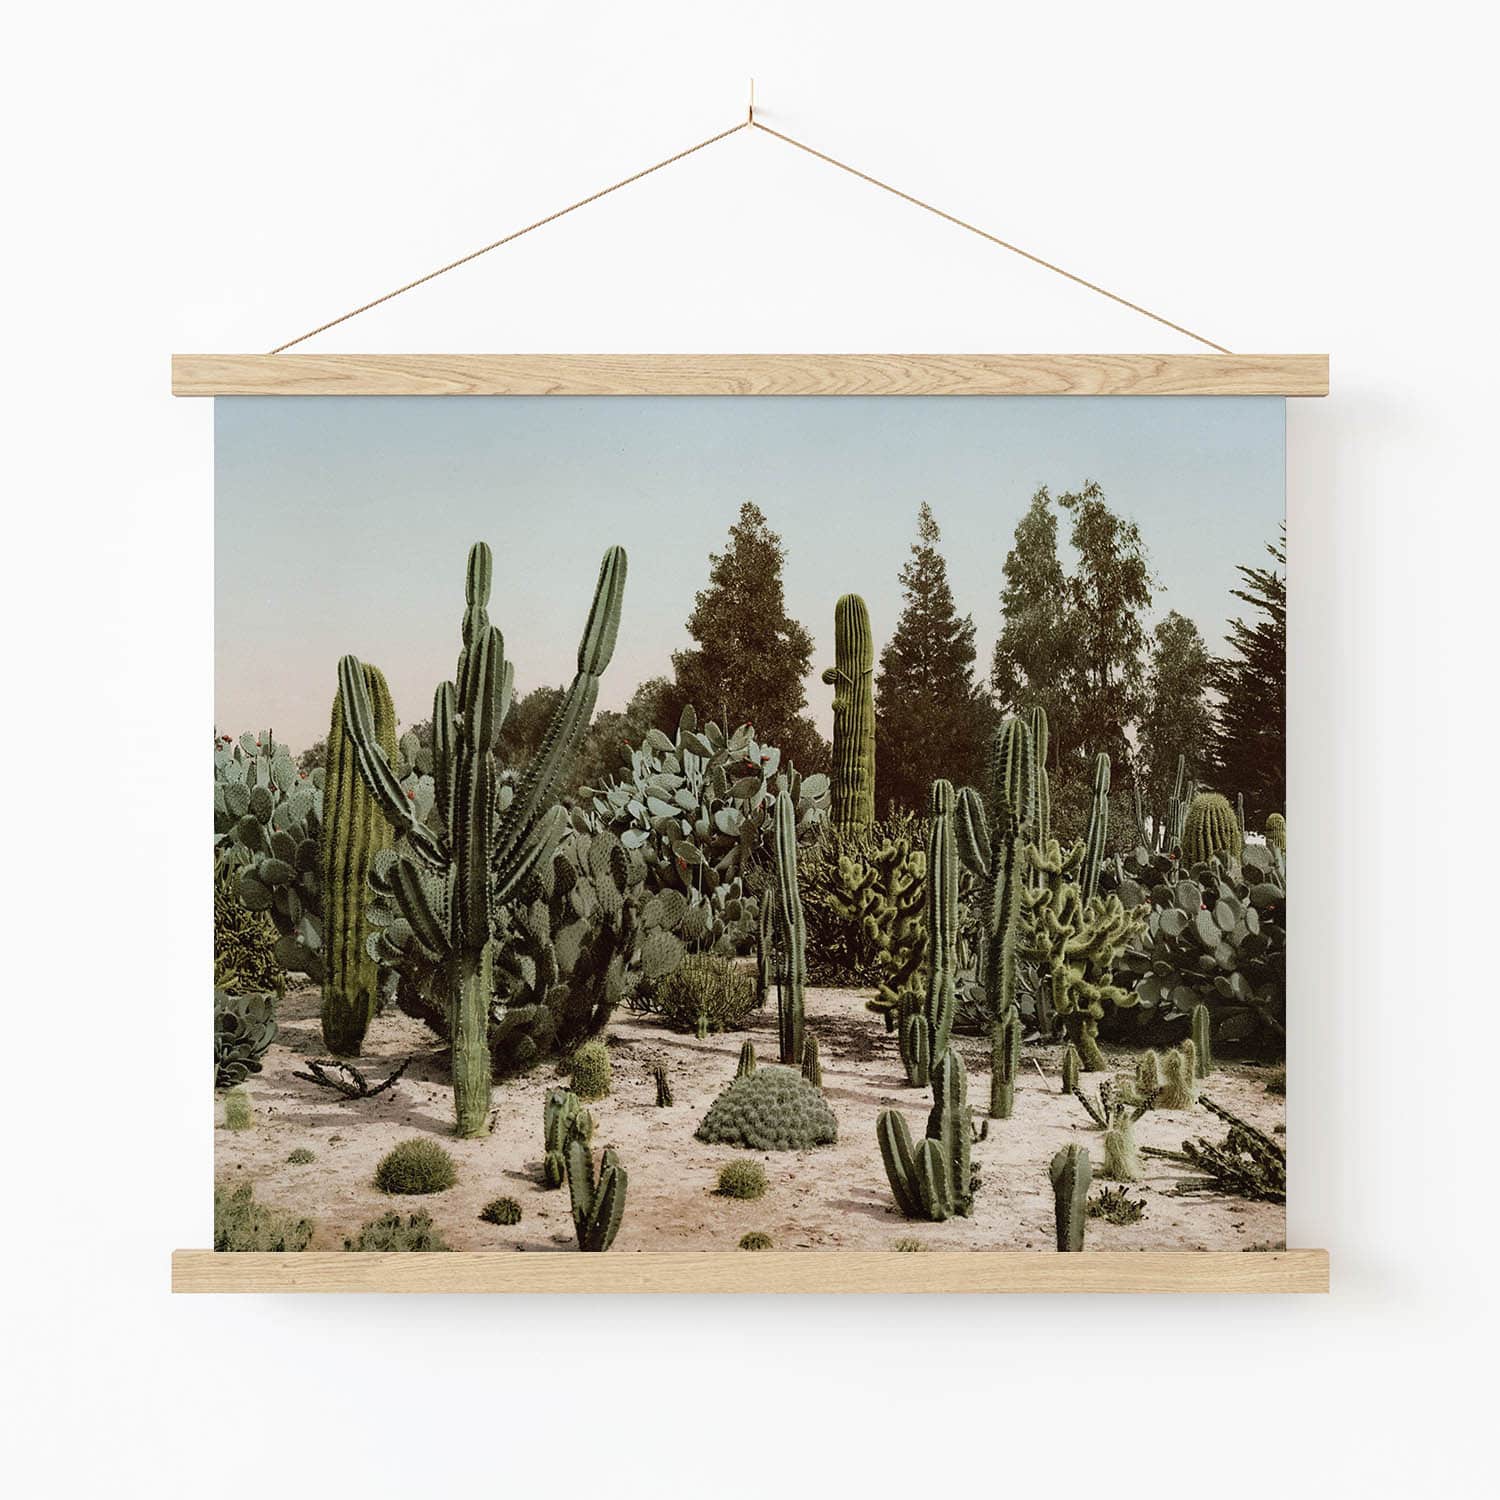 Desert Landscape Art Print in Wood Hanger Frame on Wall